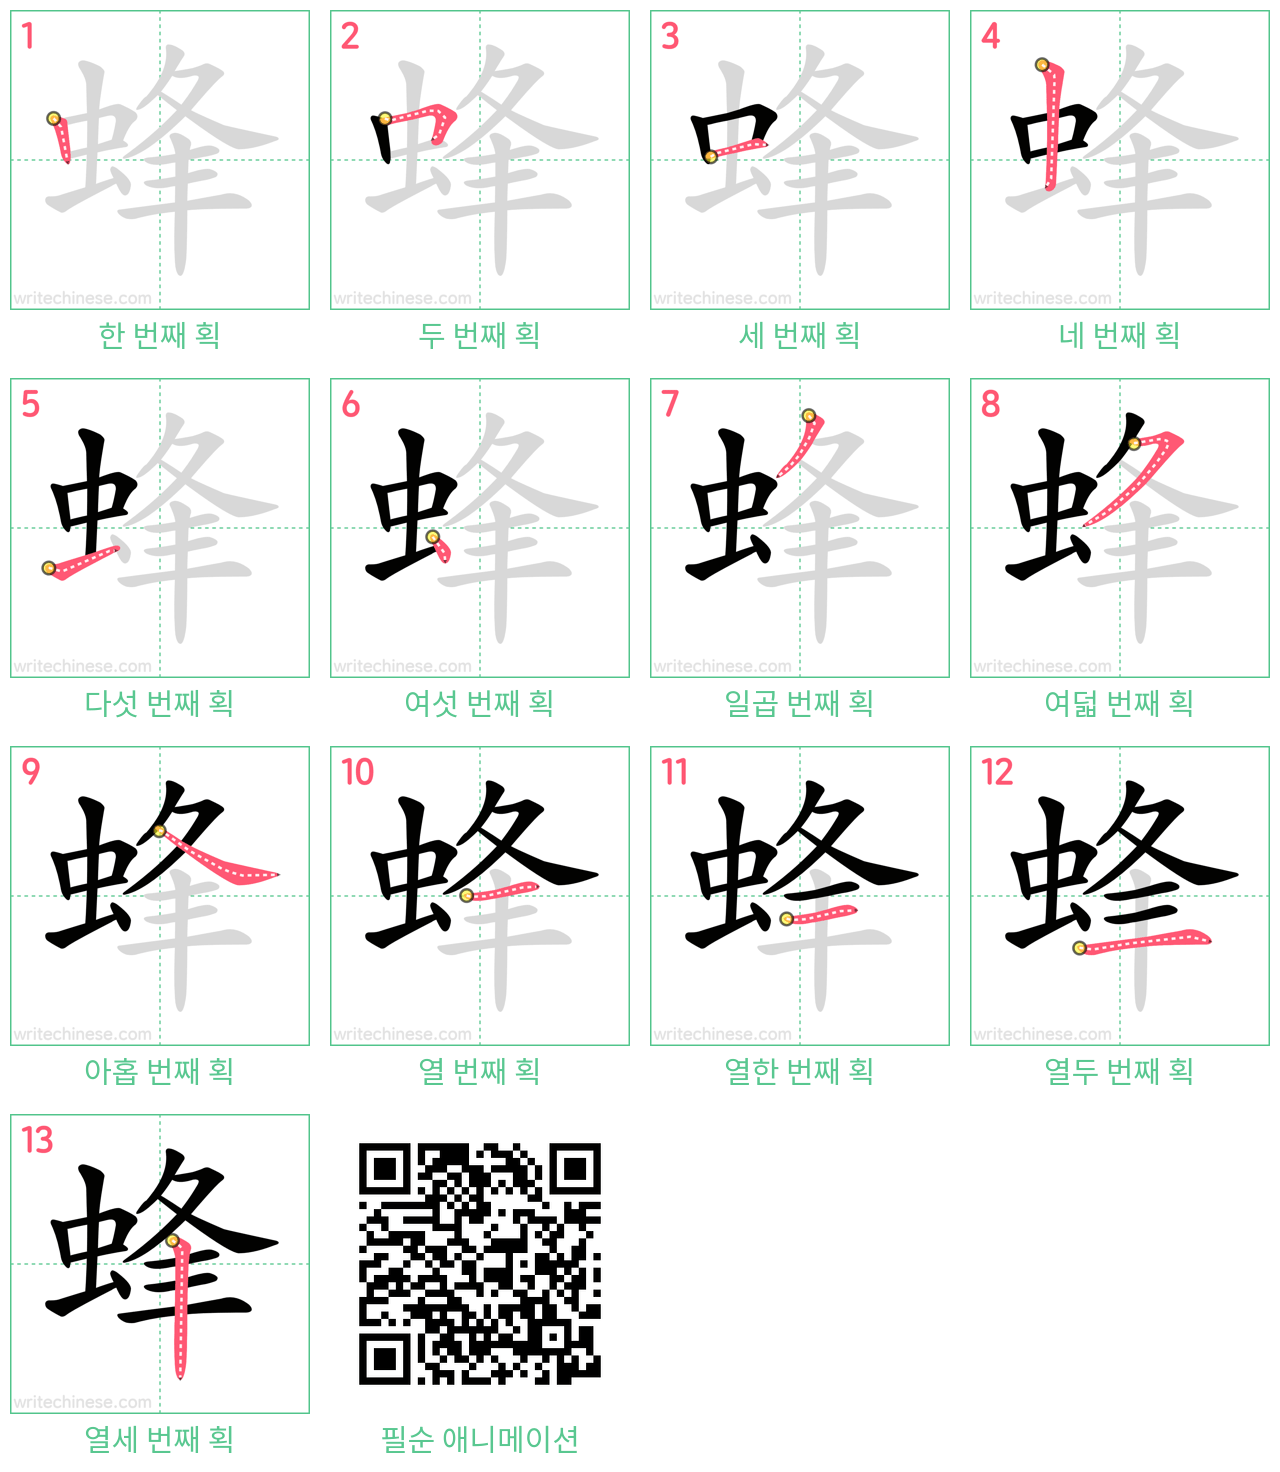 蜂 step-by-step stroke order diagrams